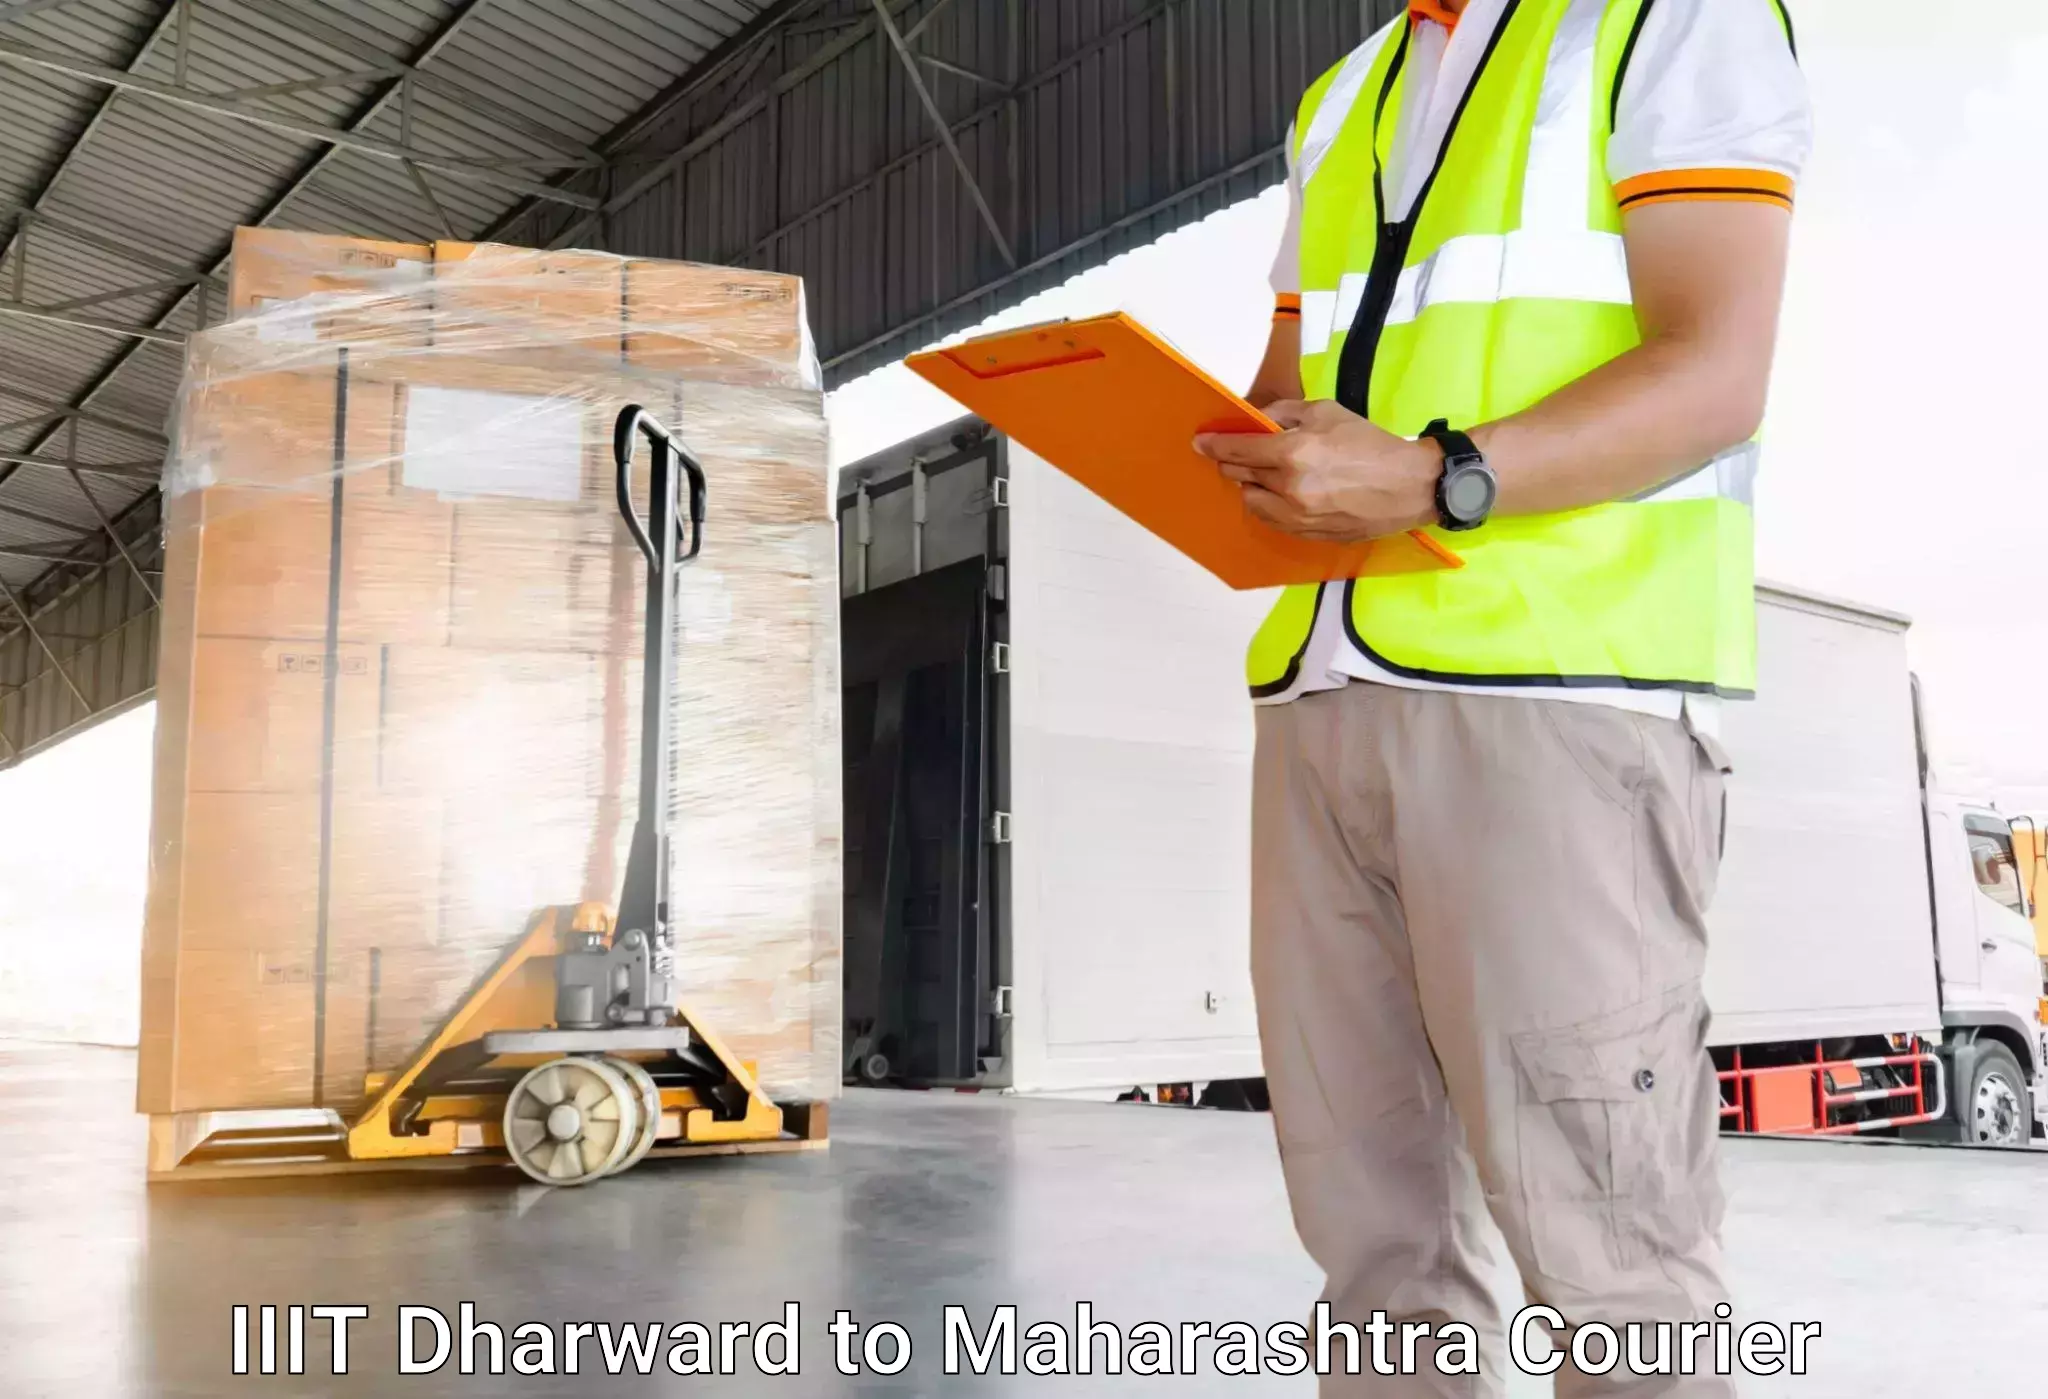 Luggage shipment specialists IIIT Dharward to Ahmednagar